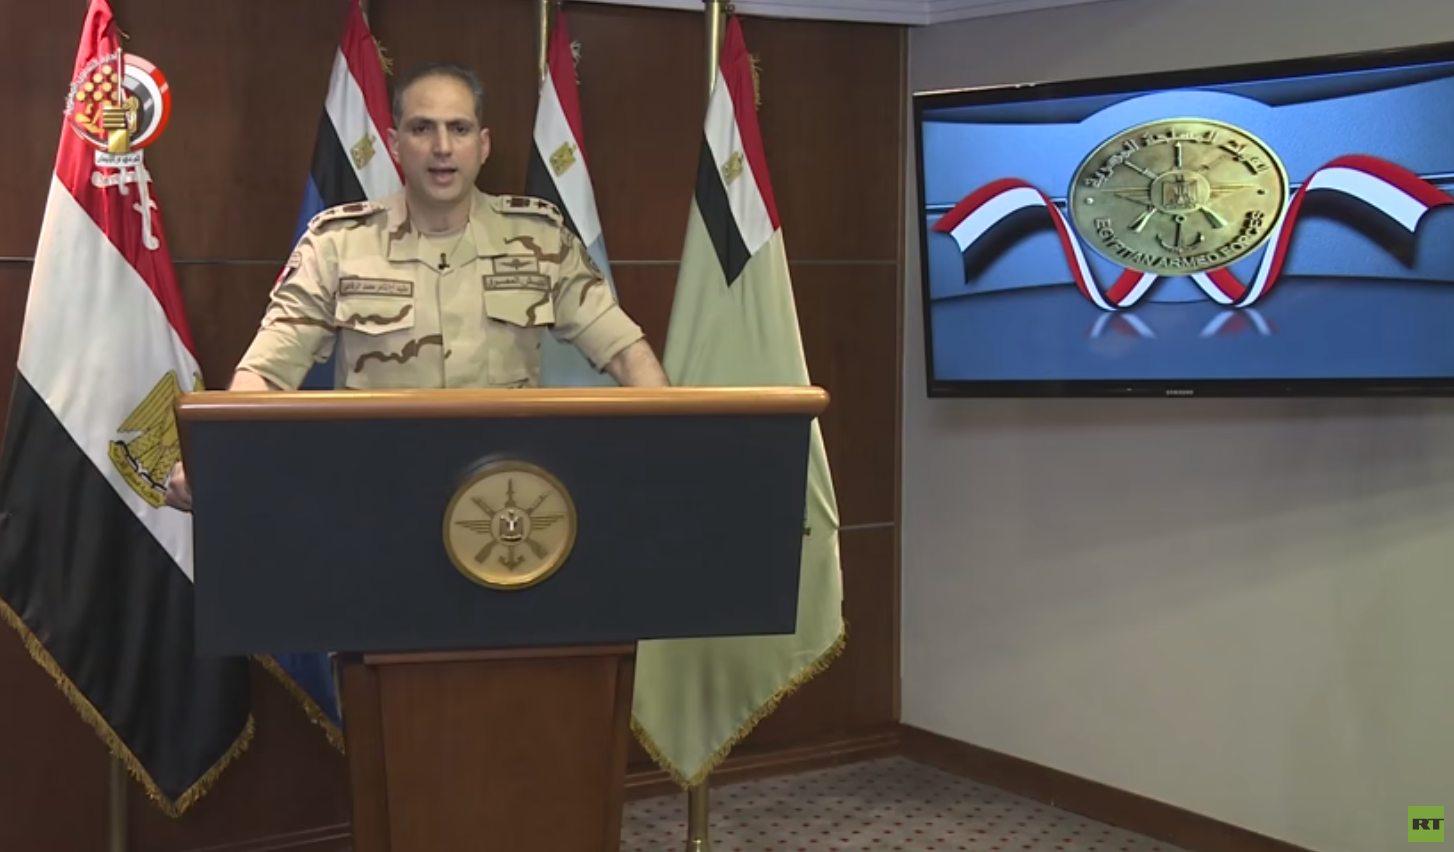 المتحدث العسكري باسم القوات المسلحة المصرية، العقيد أركان حرب تامر الرفاعي